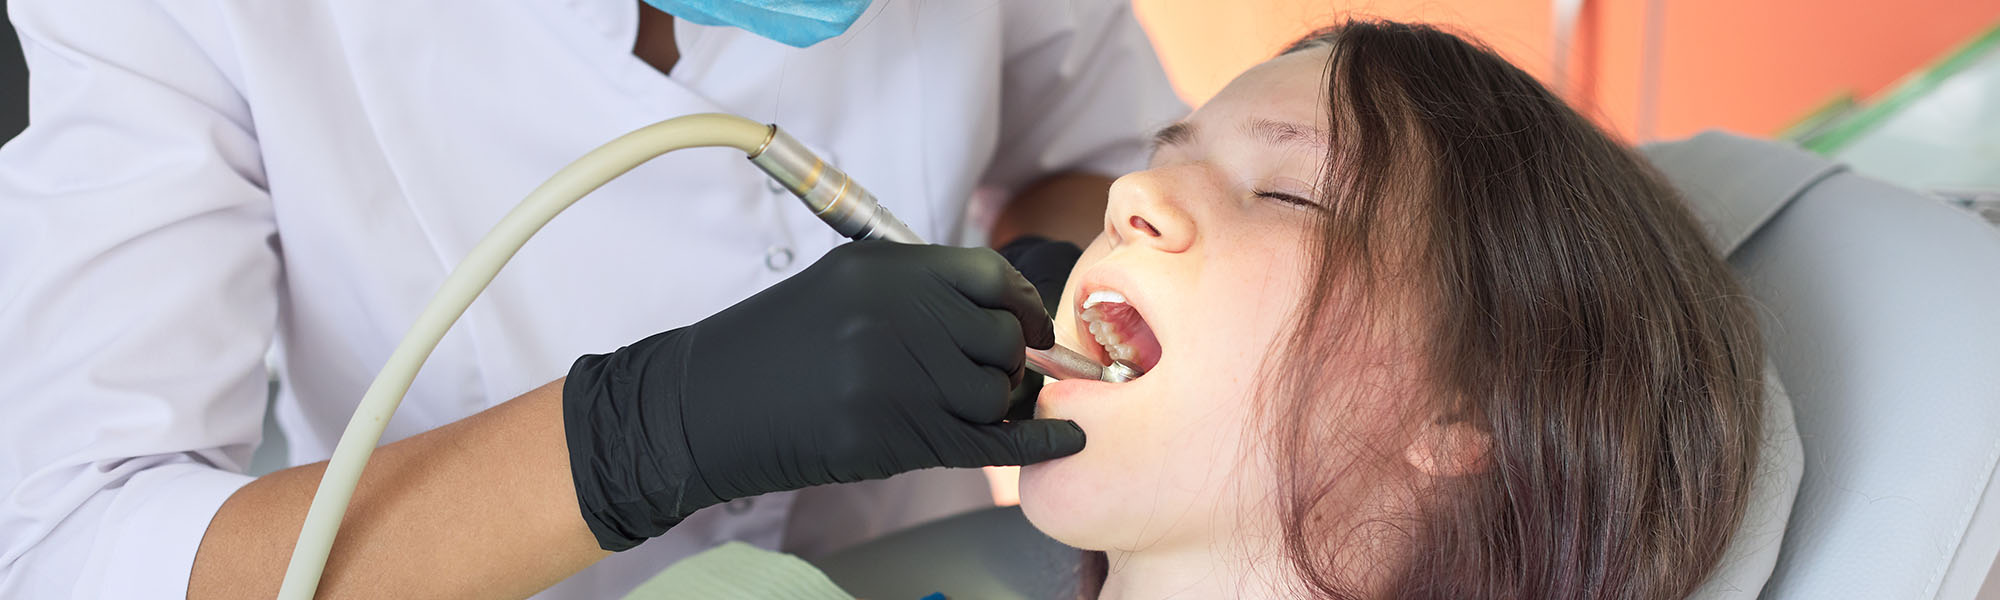 Sedation-Dentistry-FAQs